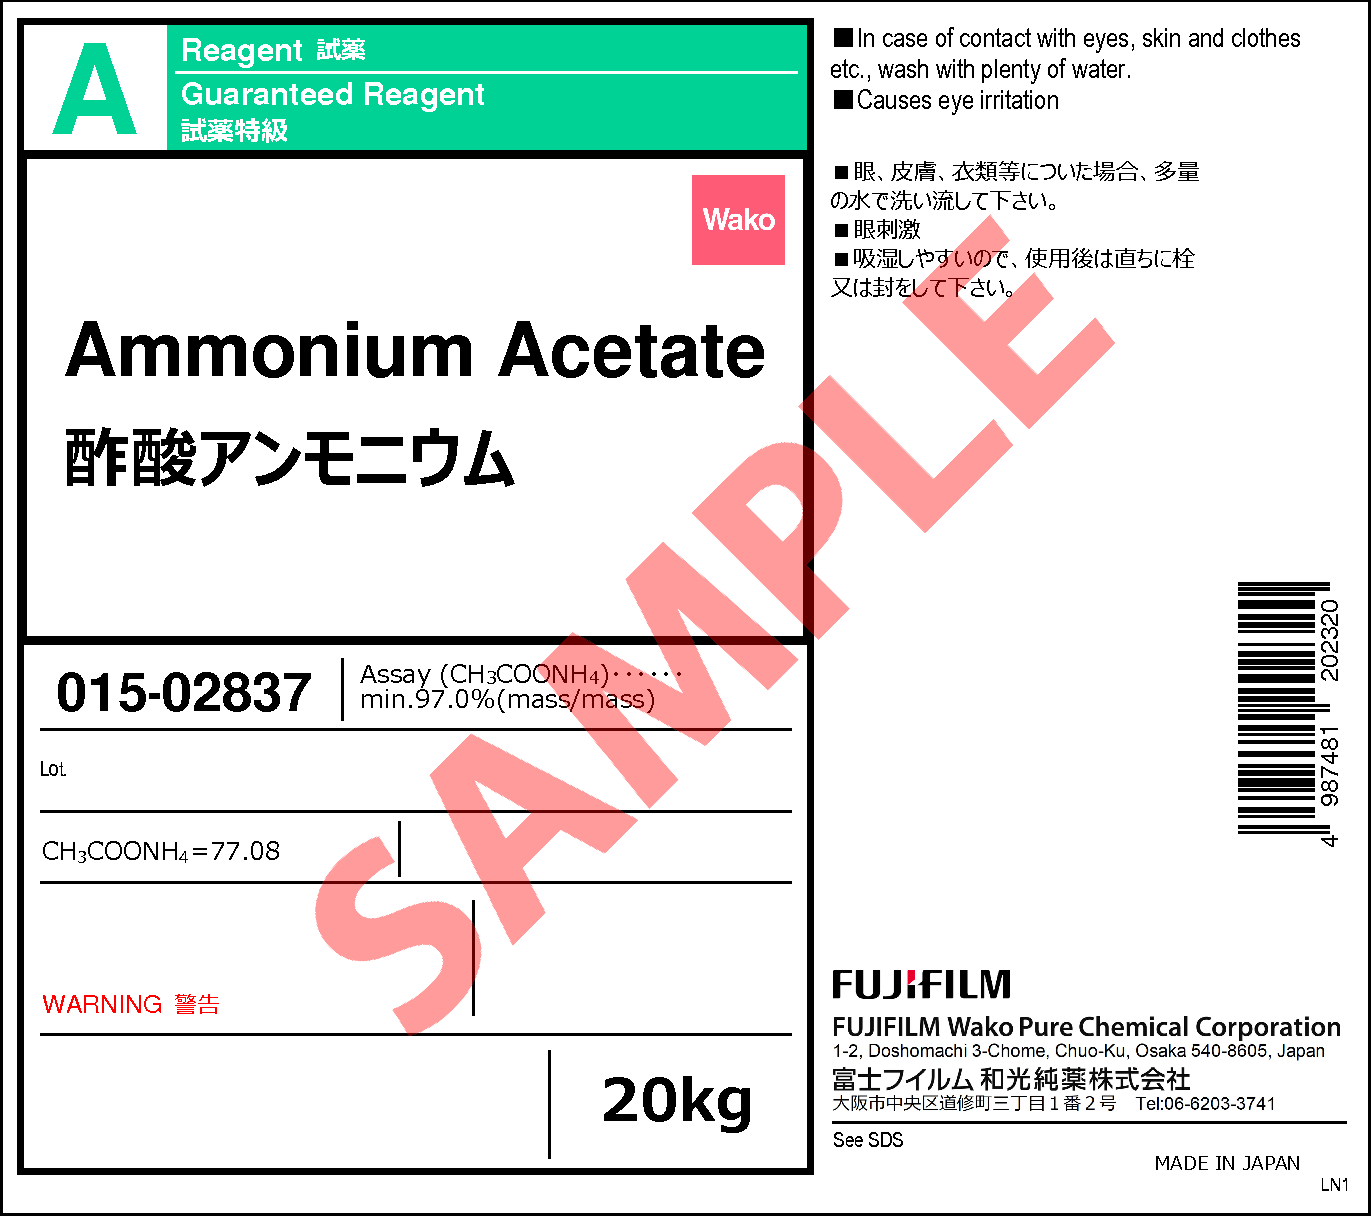 631 61 8 酢酸アンモニウム Ammonium Acetate 015 027 015 022 017 021 019 025 詳細情報 常用試薬 ラボウェア 試薬 富士フイルム和光純薬